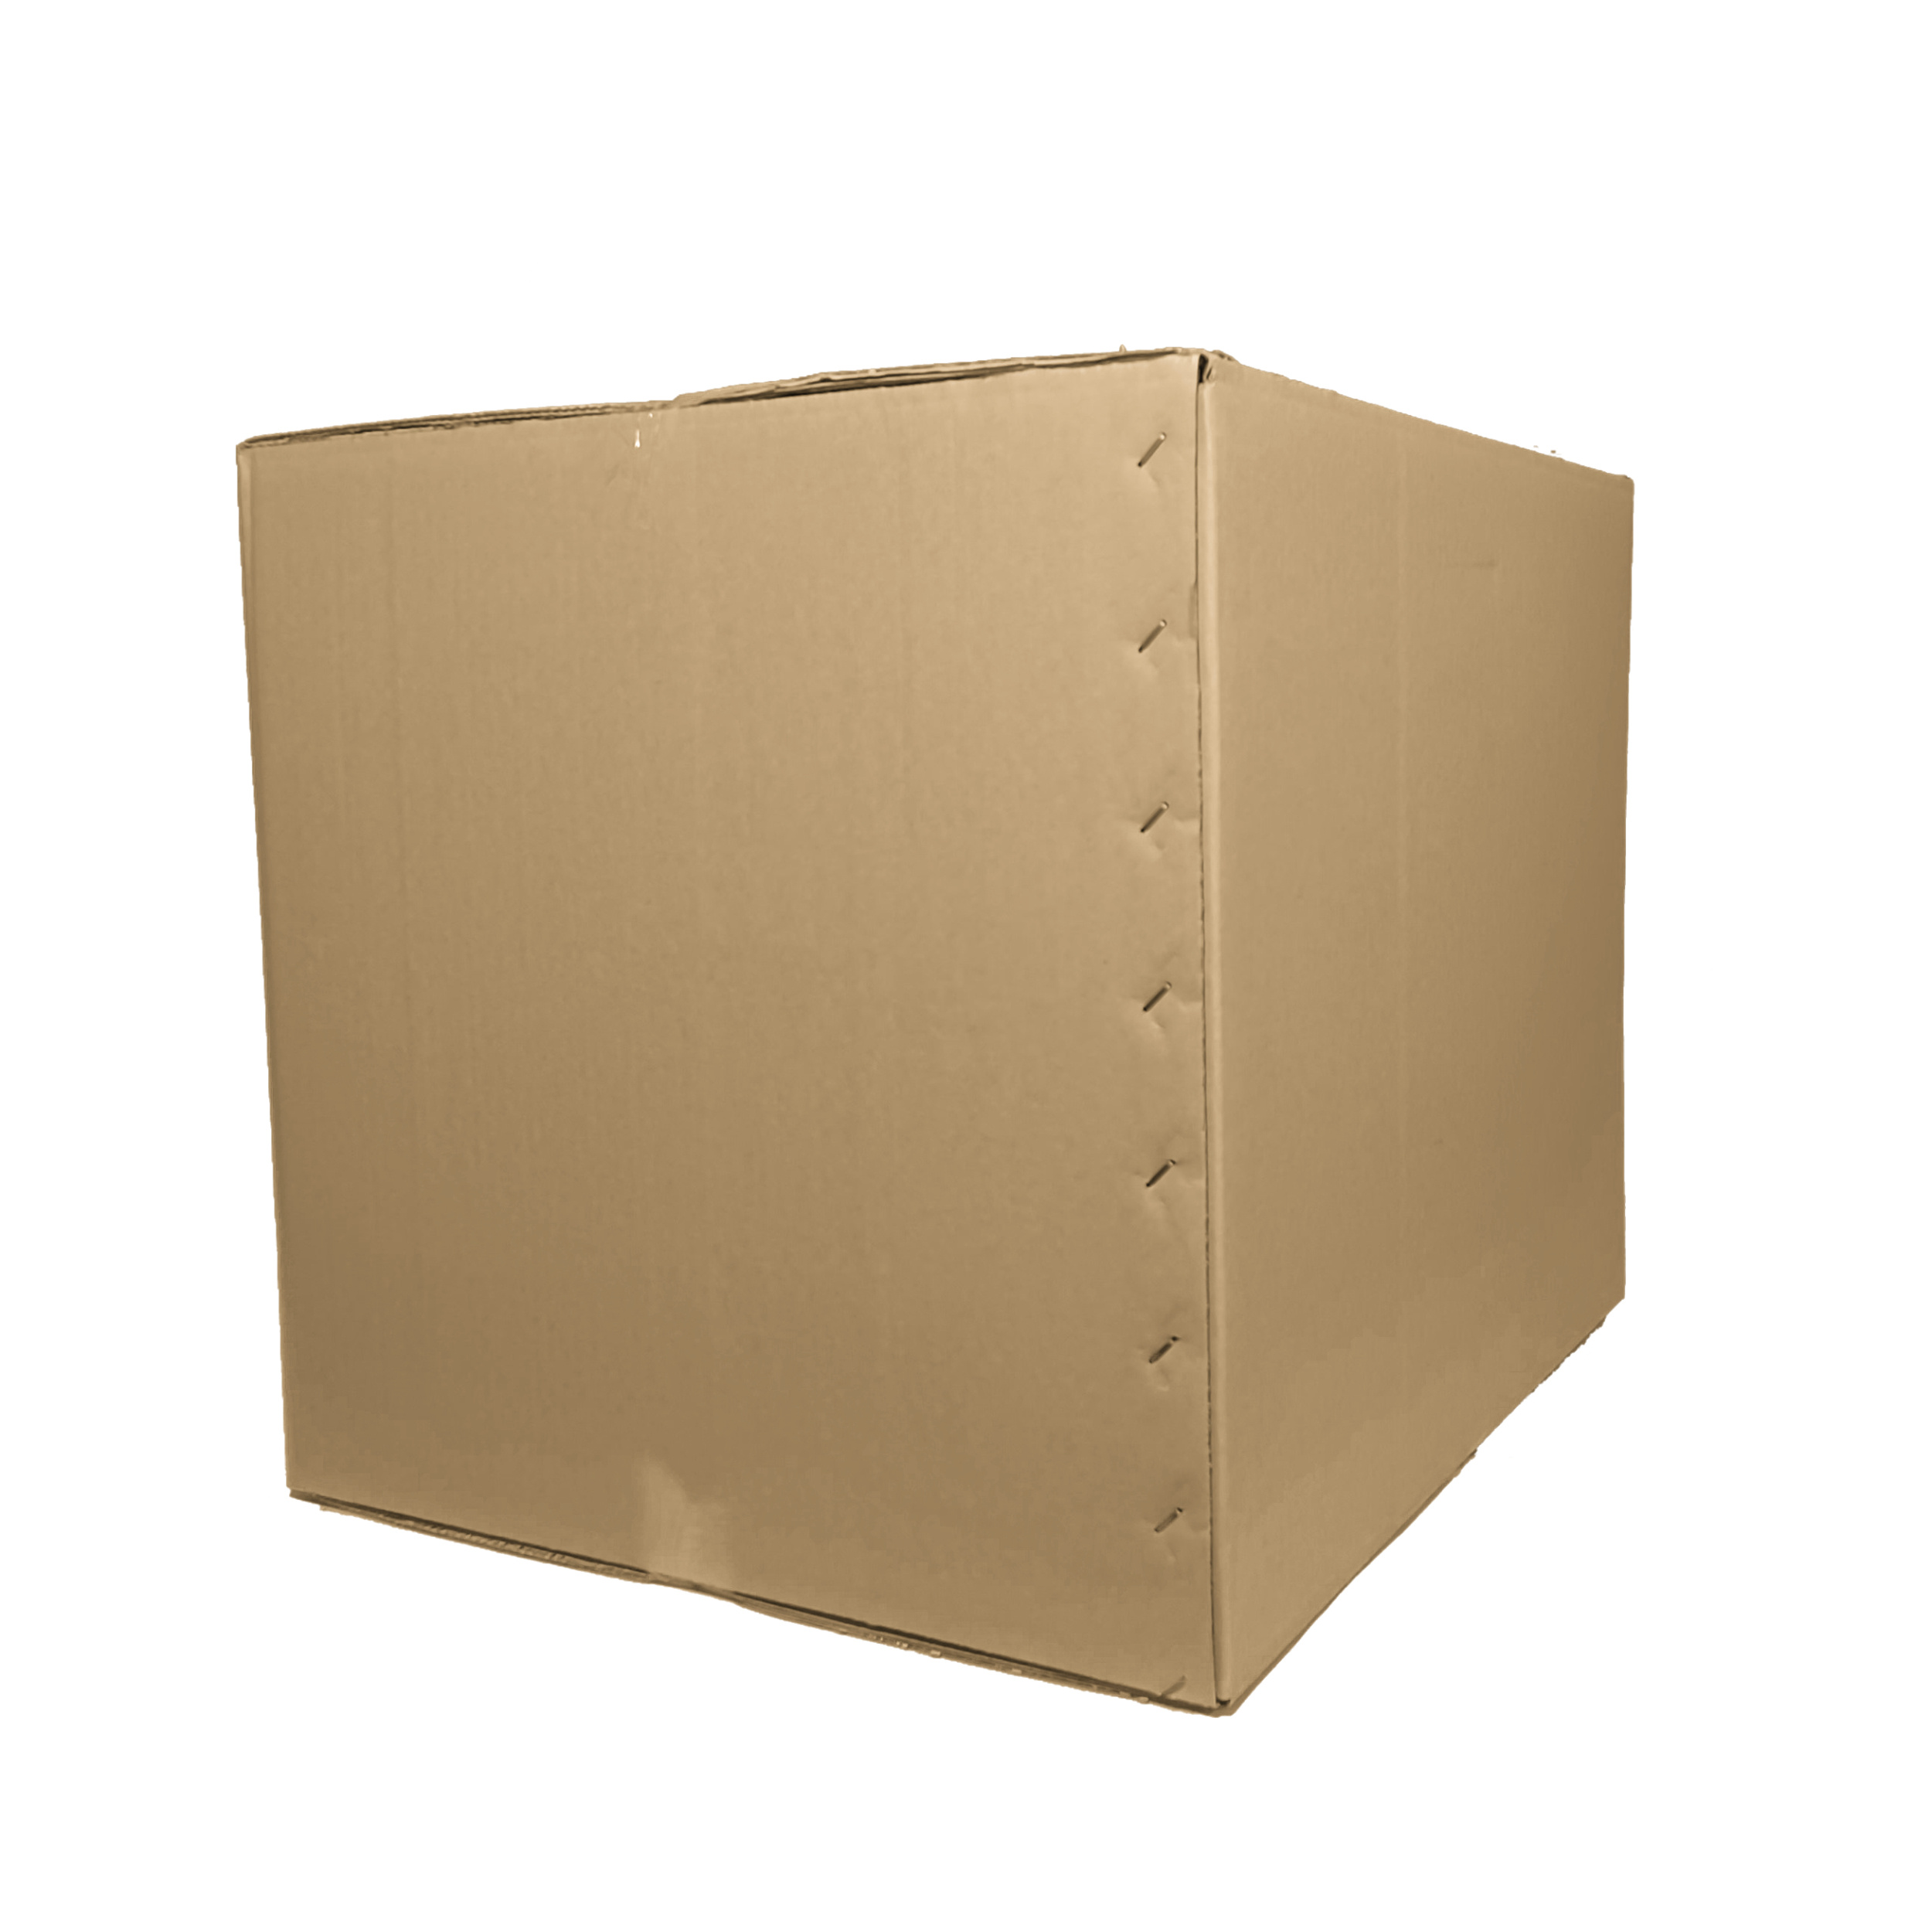 جعبه اسباب کشی  مدل 5 لایه 60x50x50T8 بسته 8 عددی